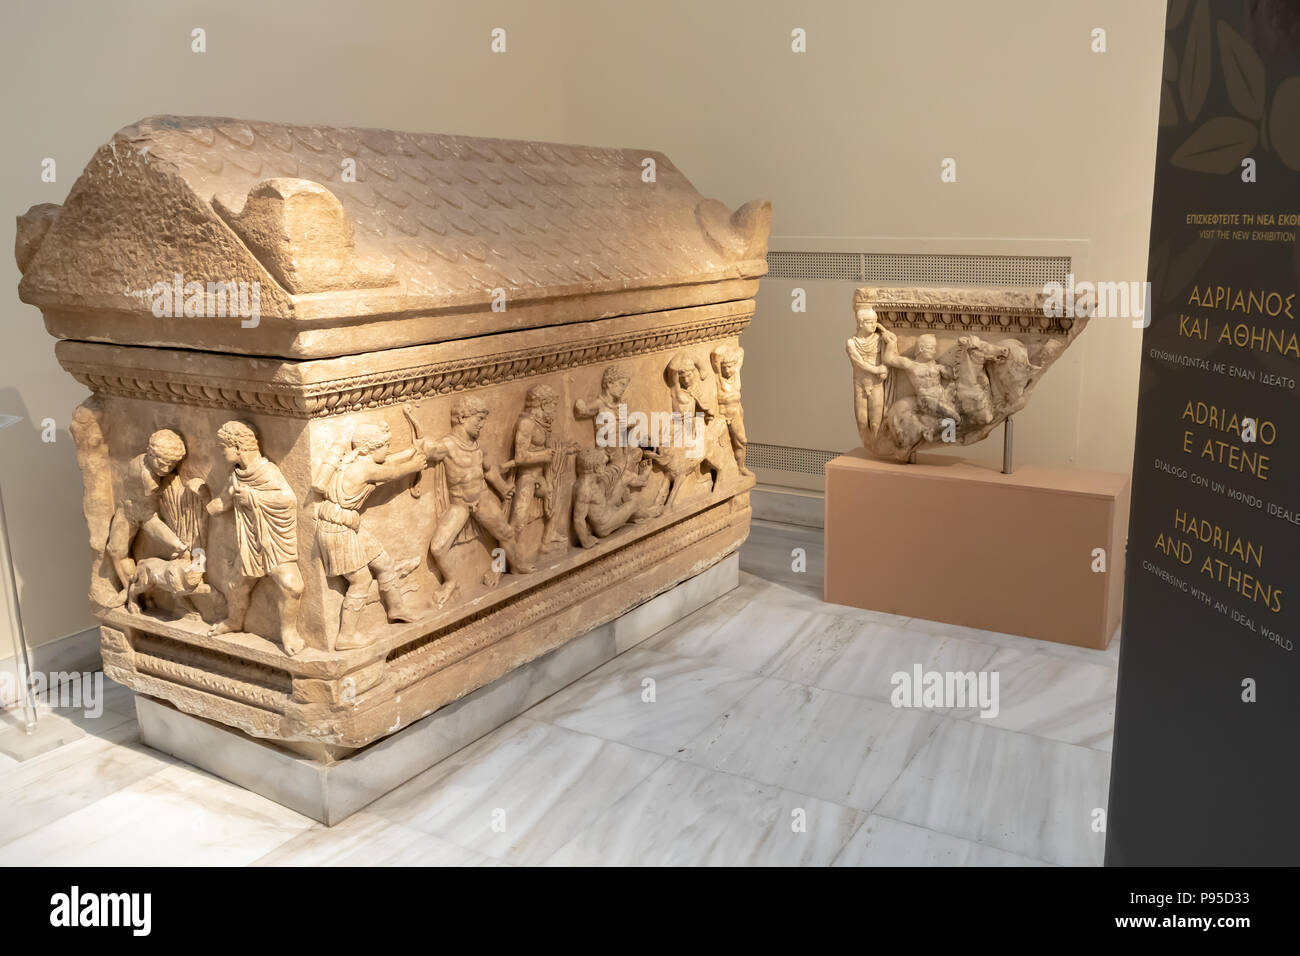 Attico sarcofago, Pentelic marmo, Caledonia caccia al cinghiale, trovati in Aysios Ioannis, Patrasso, Attica, due giovani uomini di fronte a un Lion. 150-170 d.c. Foto Stock